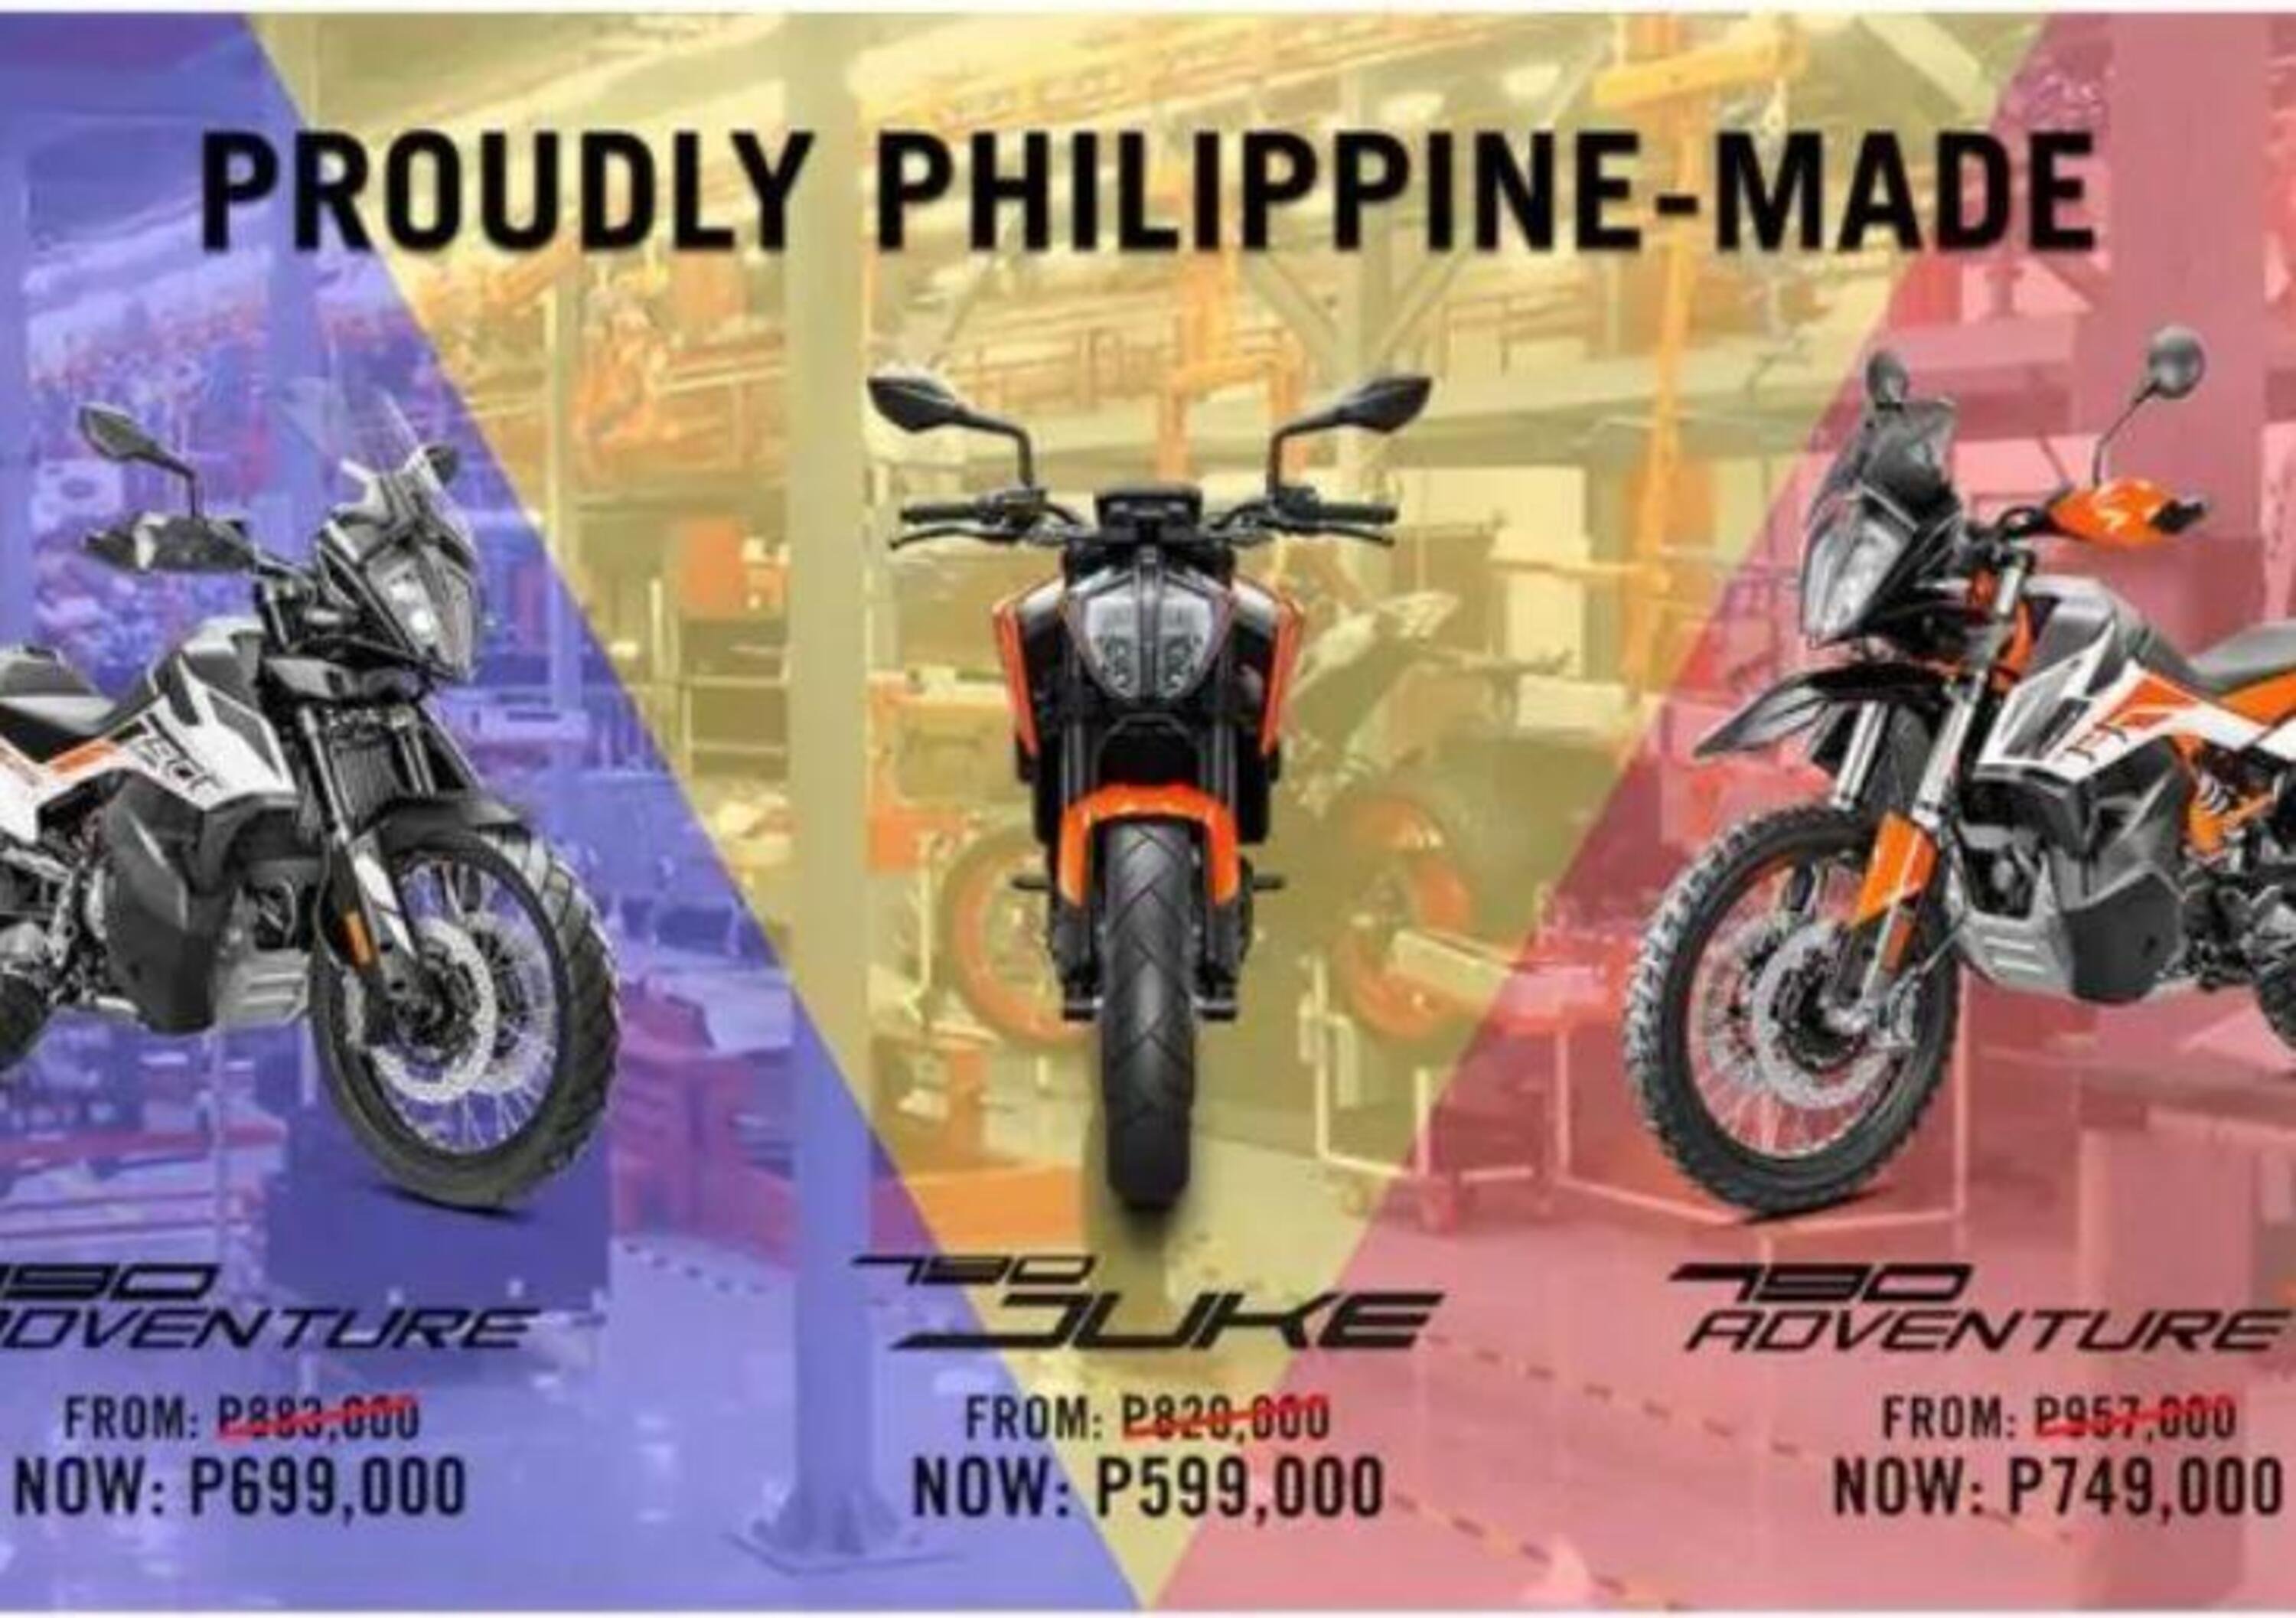 Le KTM 790, Adventure e Duke, prodotte anche nelle Filippine